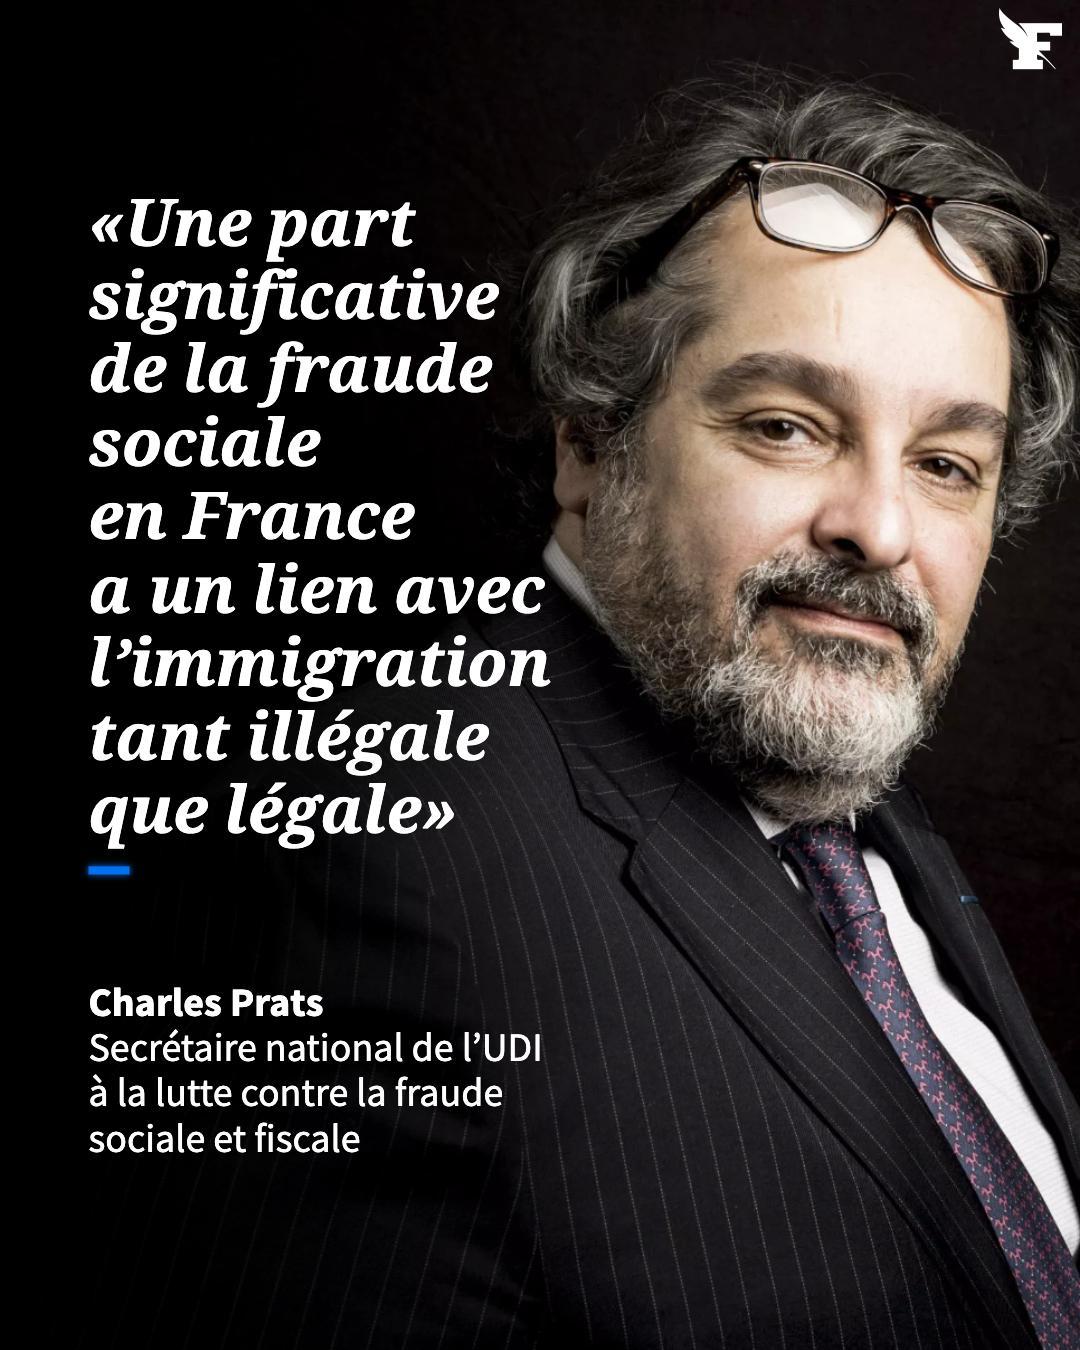 Le Figaro on Twitter: "L'ancien magistrat de la Délégation nationale à la  lutte contre la fraude Charles Prats explique pourquoi les abus, dans le  domaine de l'immigration, sont une des causes majeures